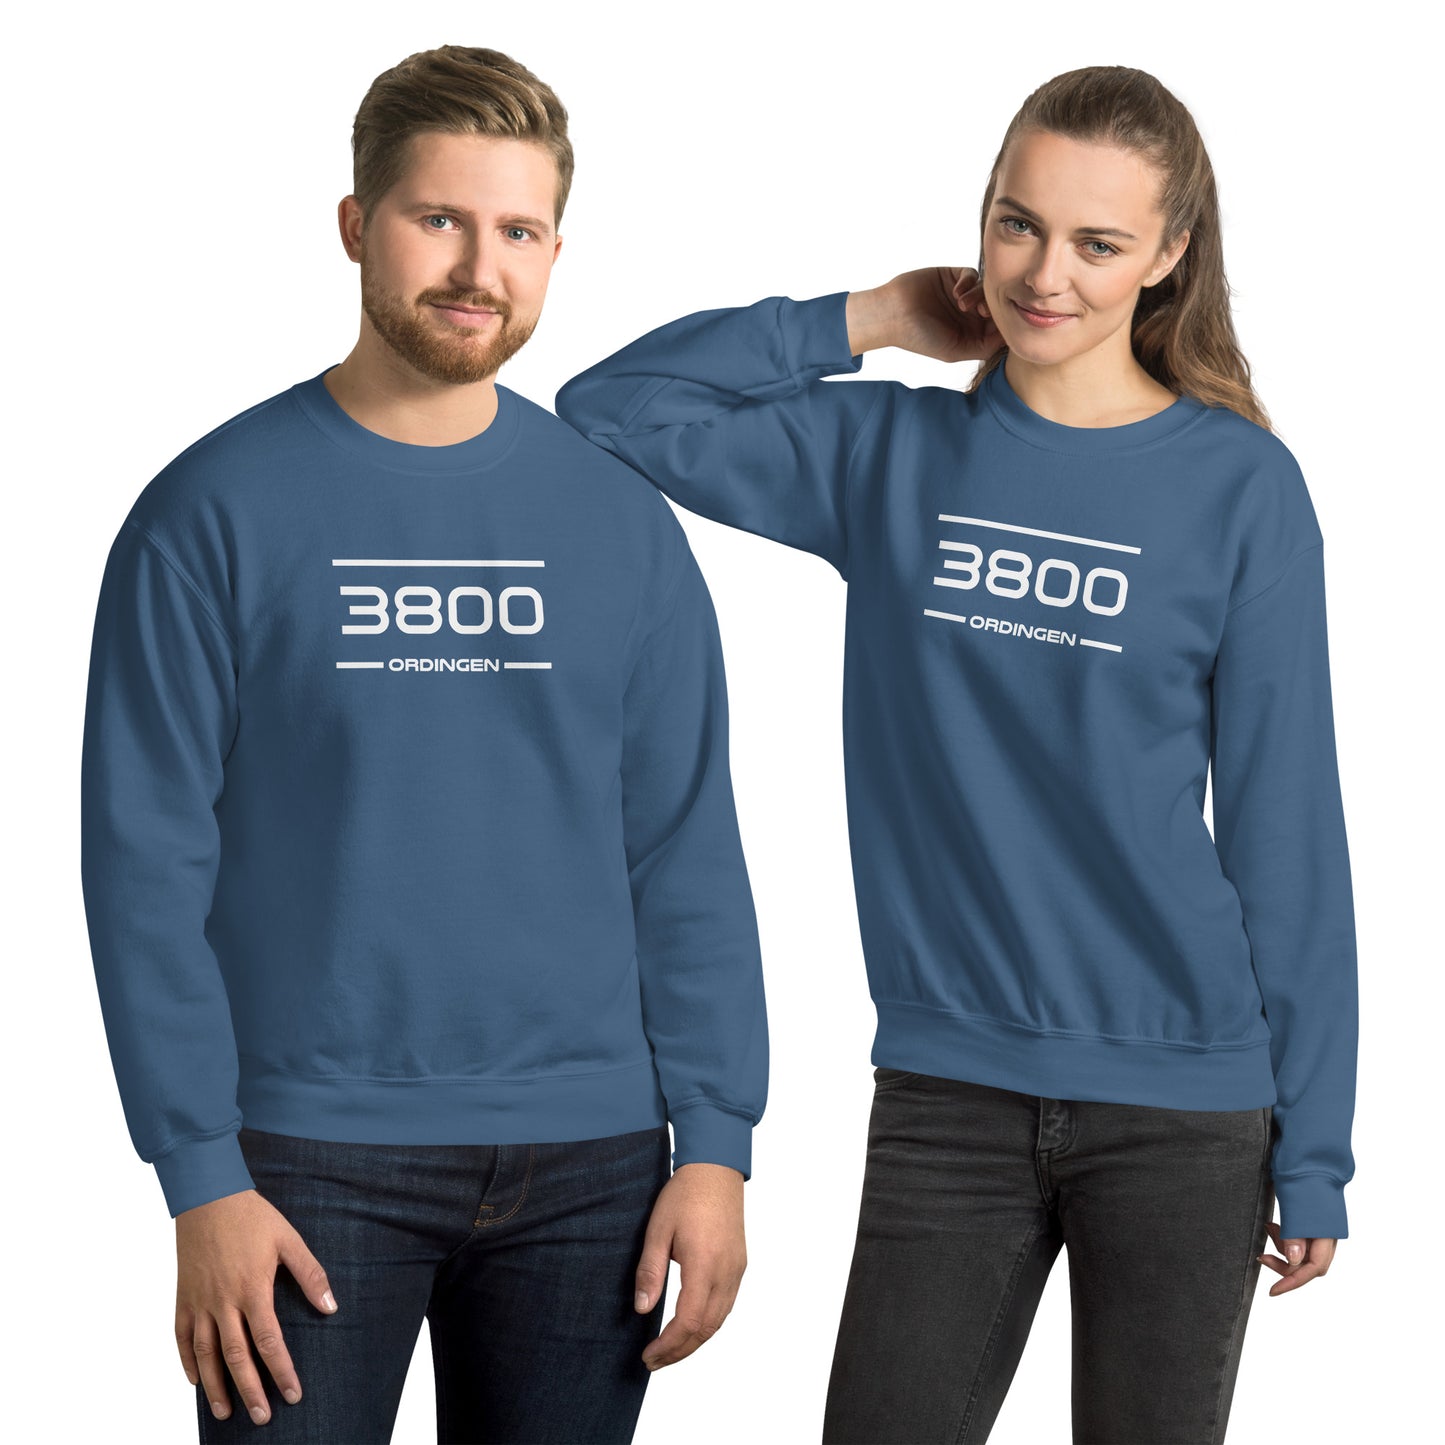 Sweater - 3800 - Ordingen (M/V)